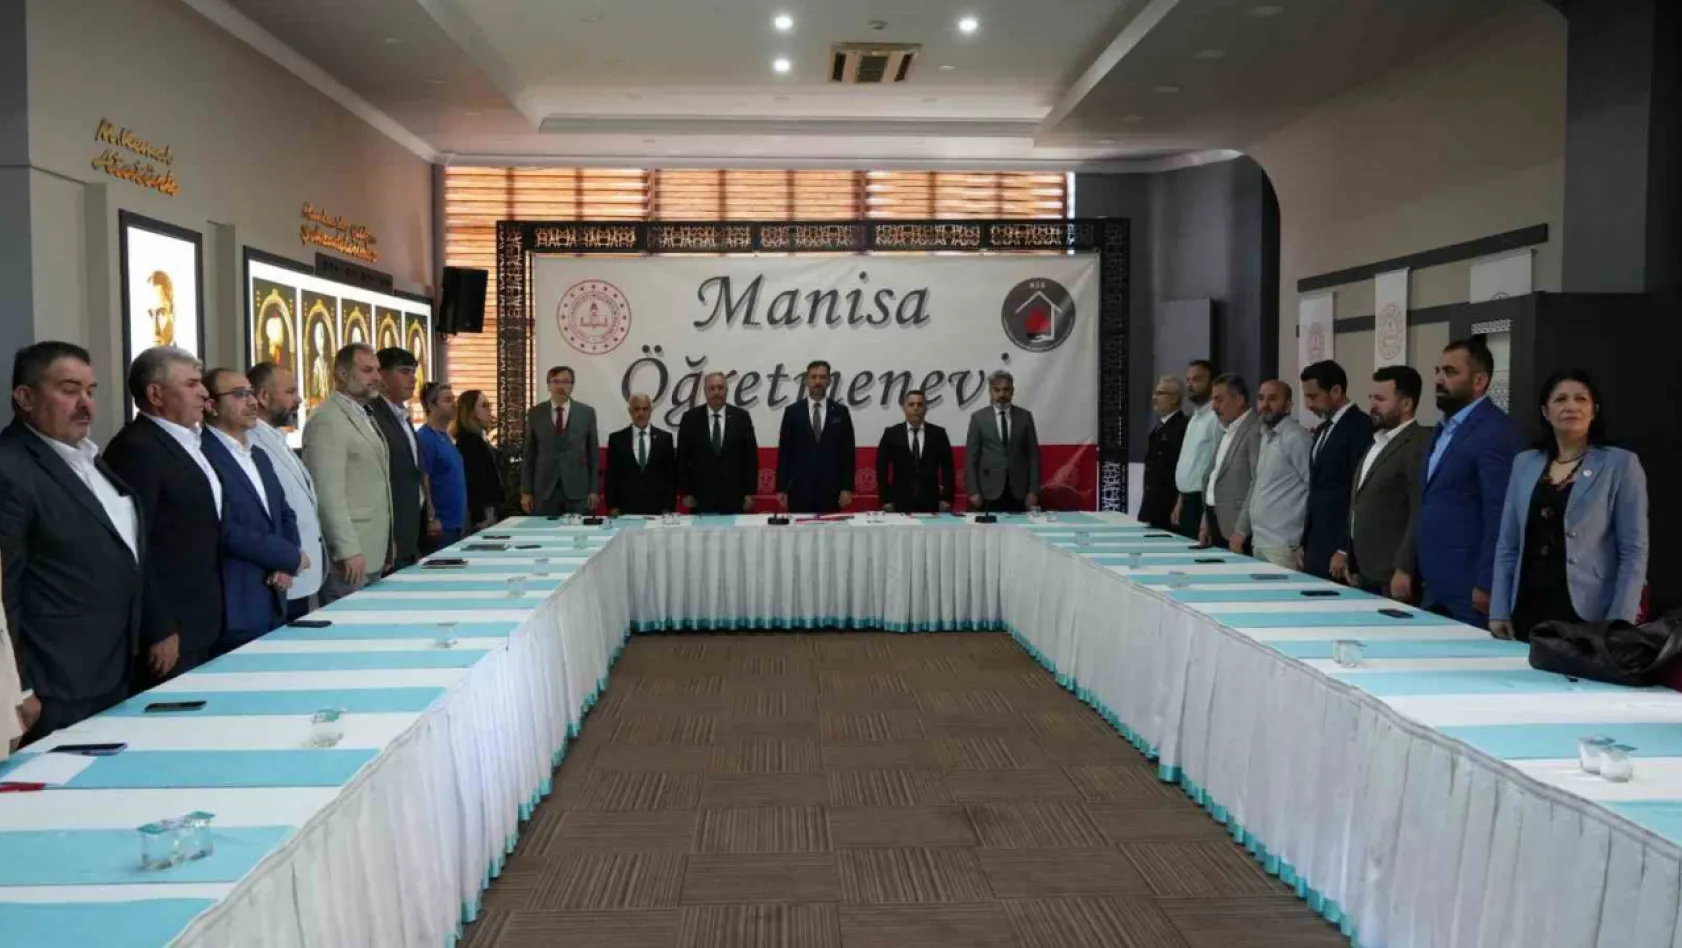 Manisa Milli Eğitim Müdürlüğünden 'Maarif' konferansı